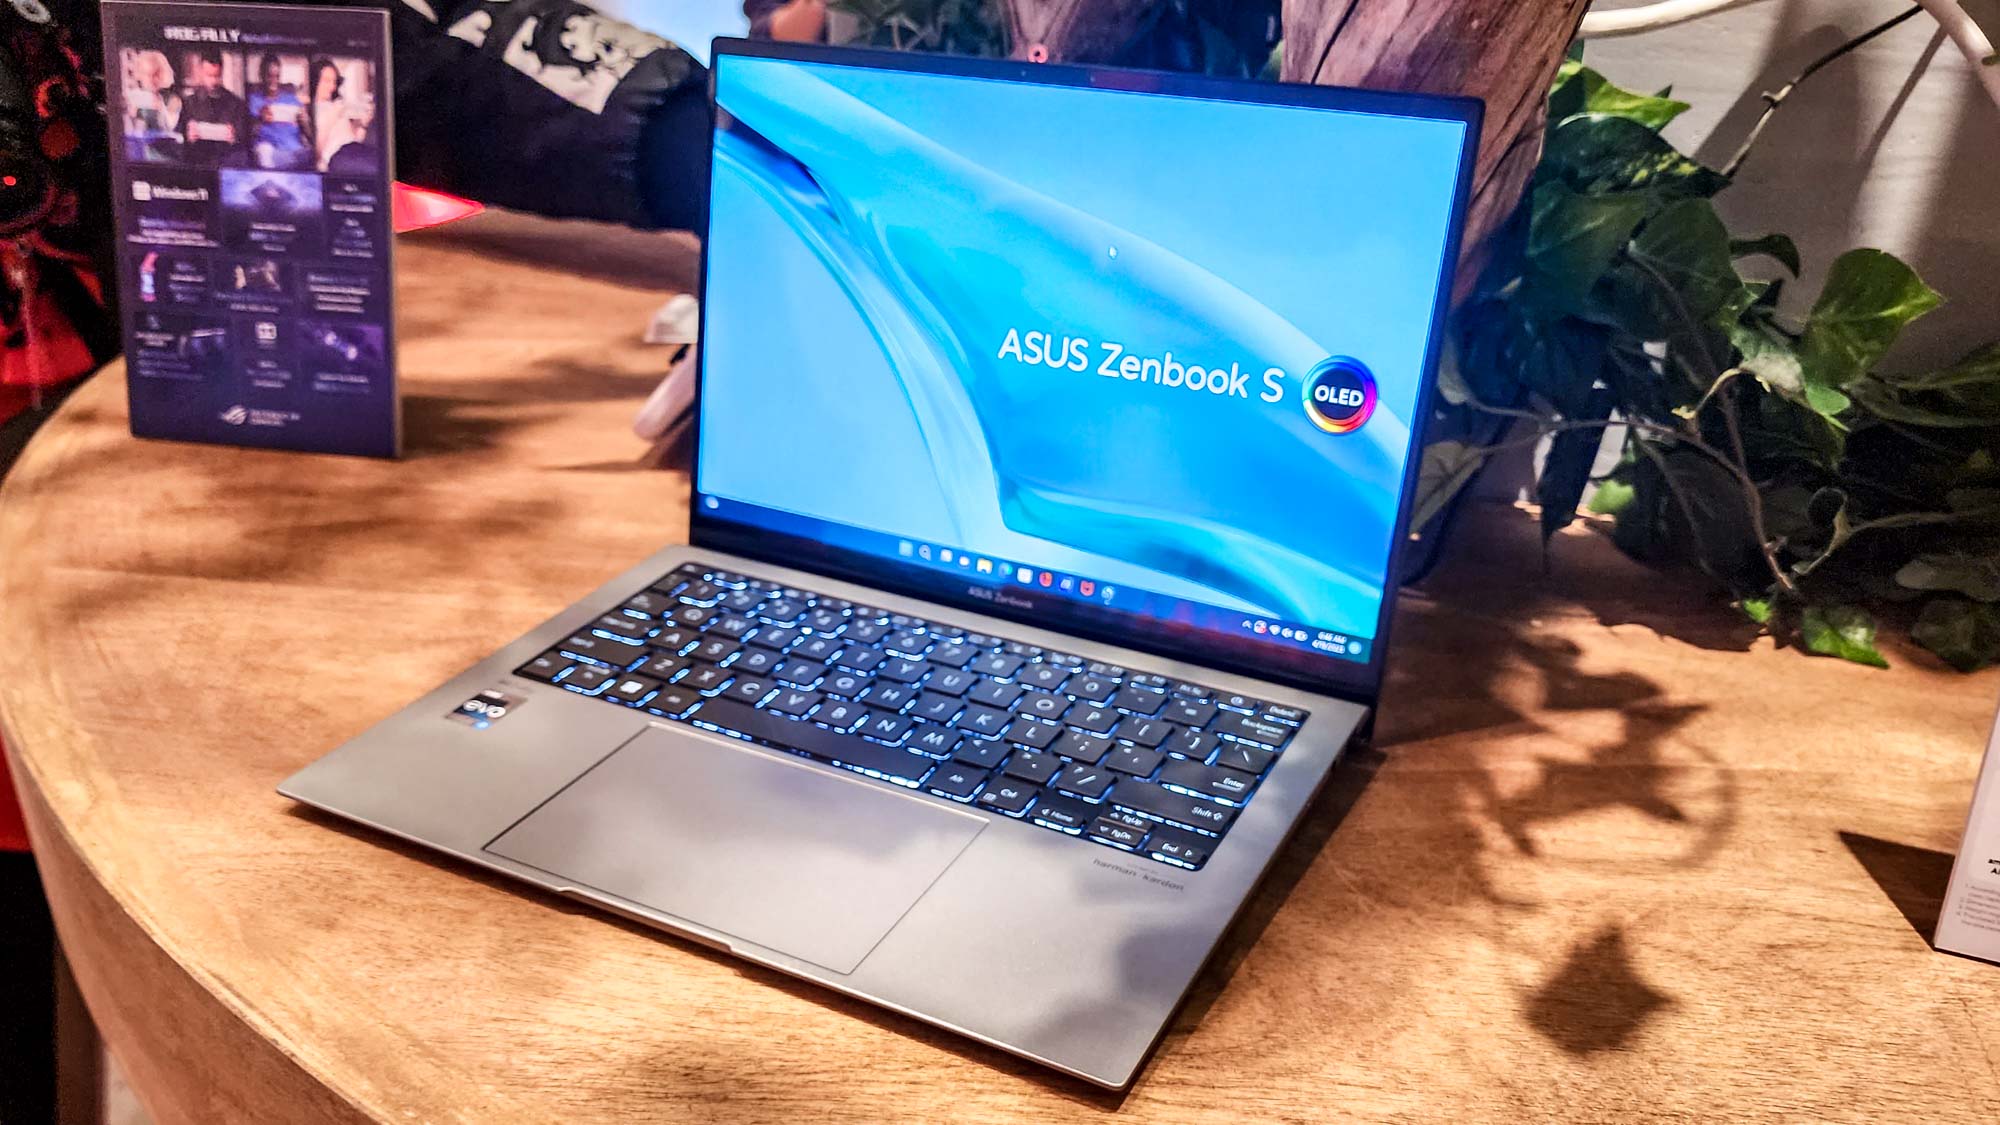 Asus Zenbook S 13 OLED (2023) hands-on: The lightest laptop I've tested